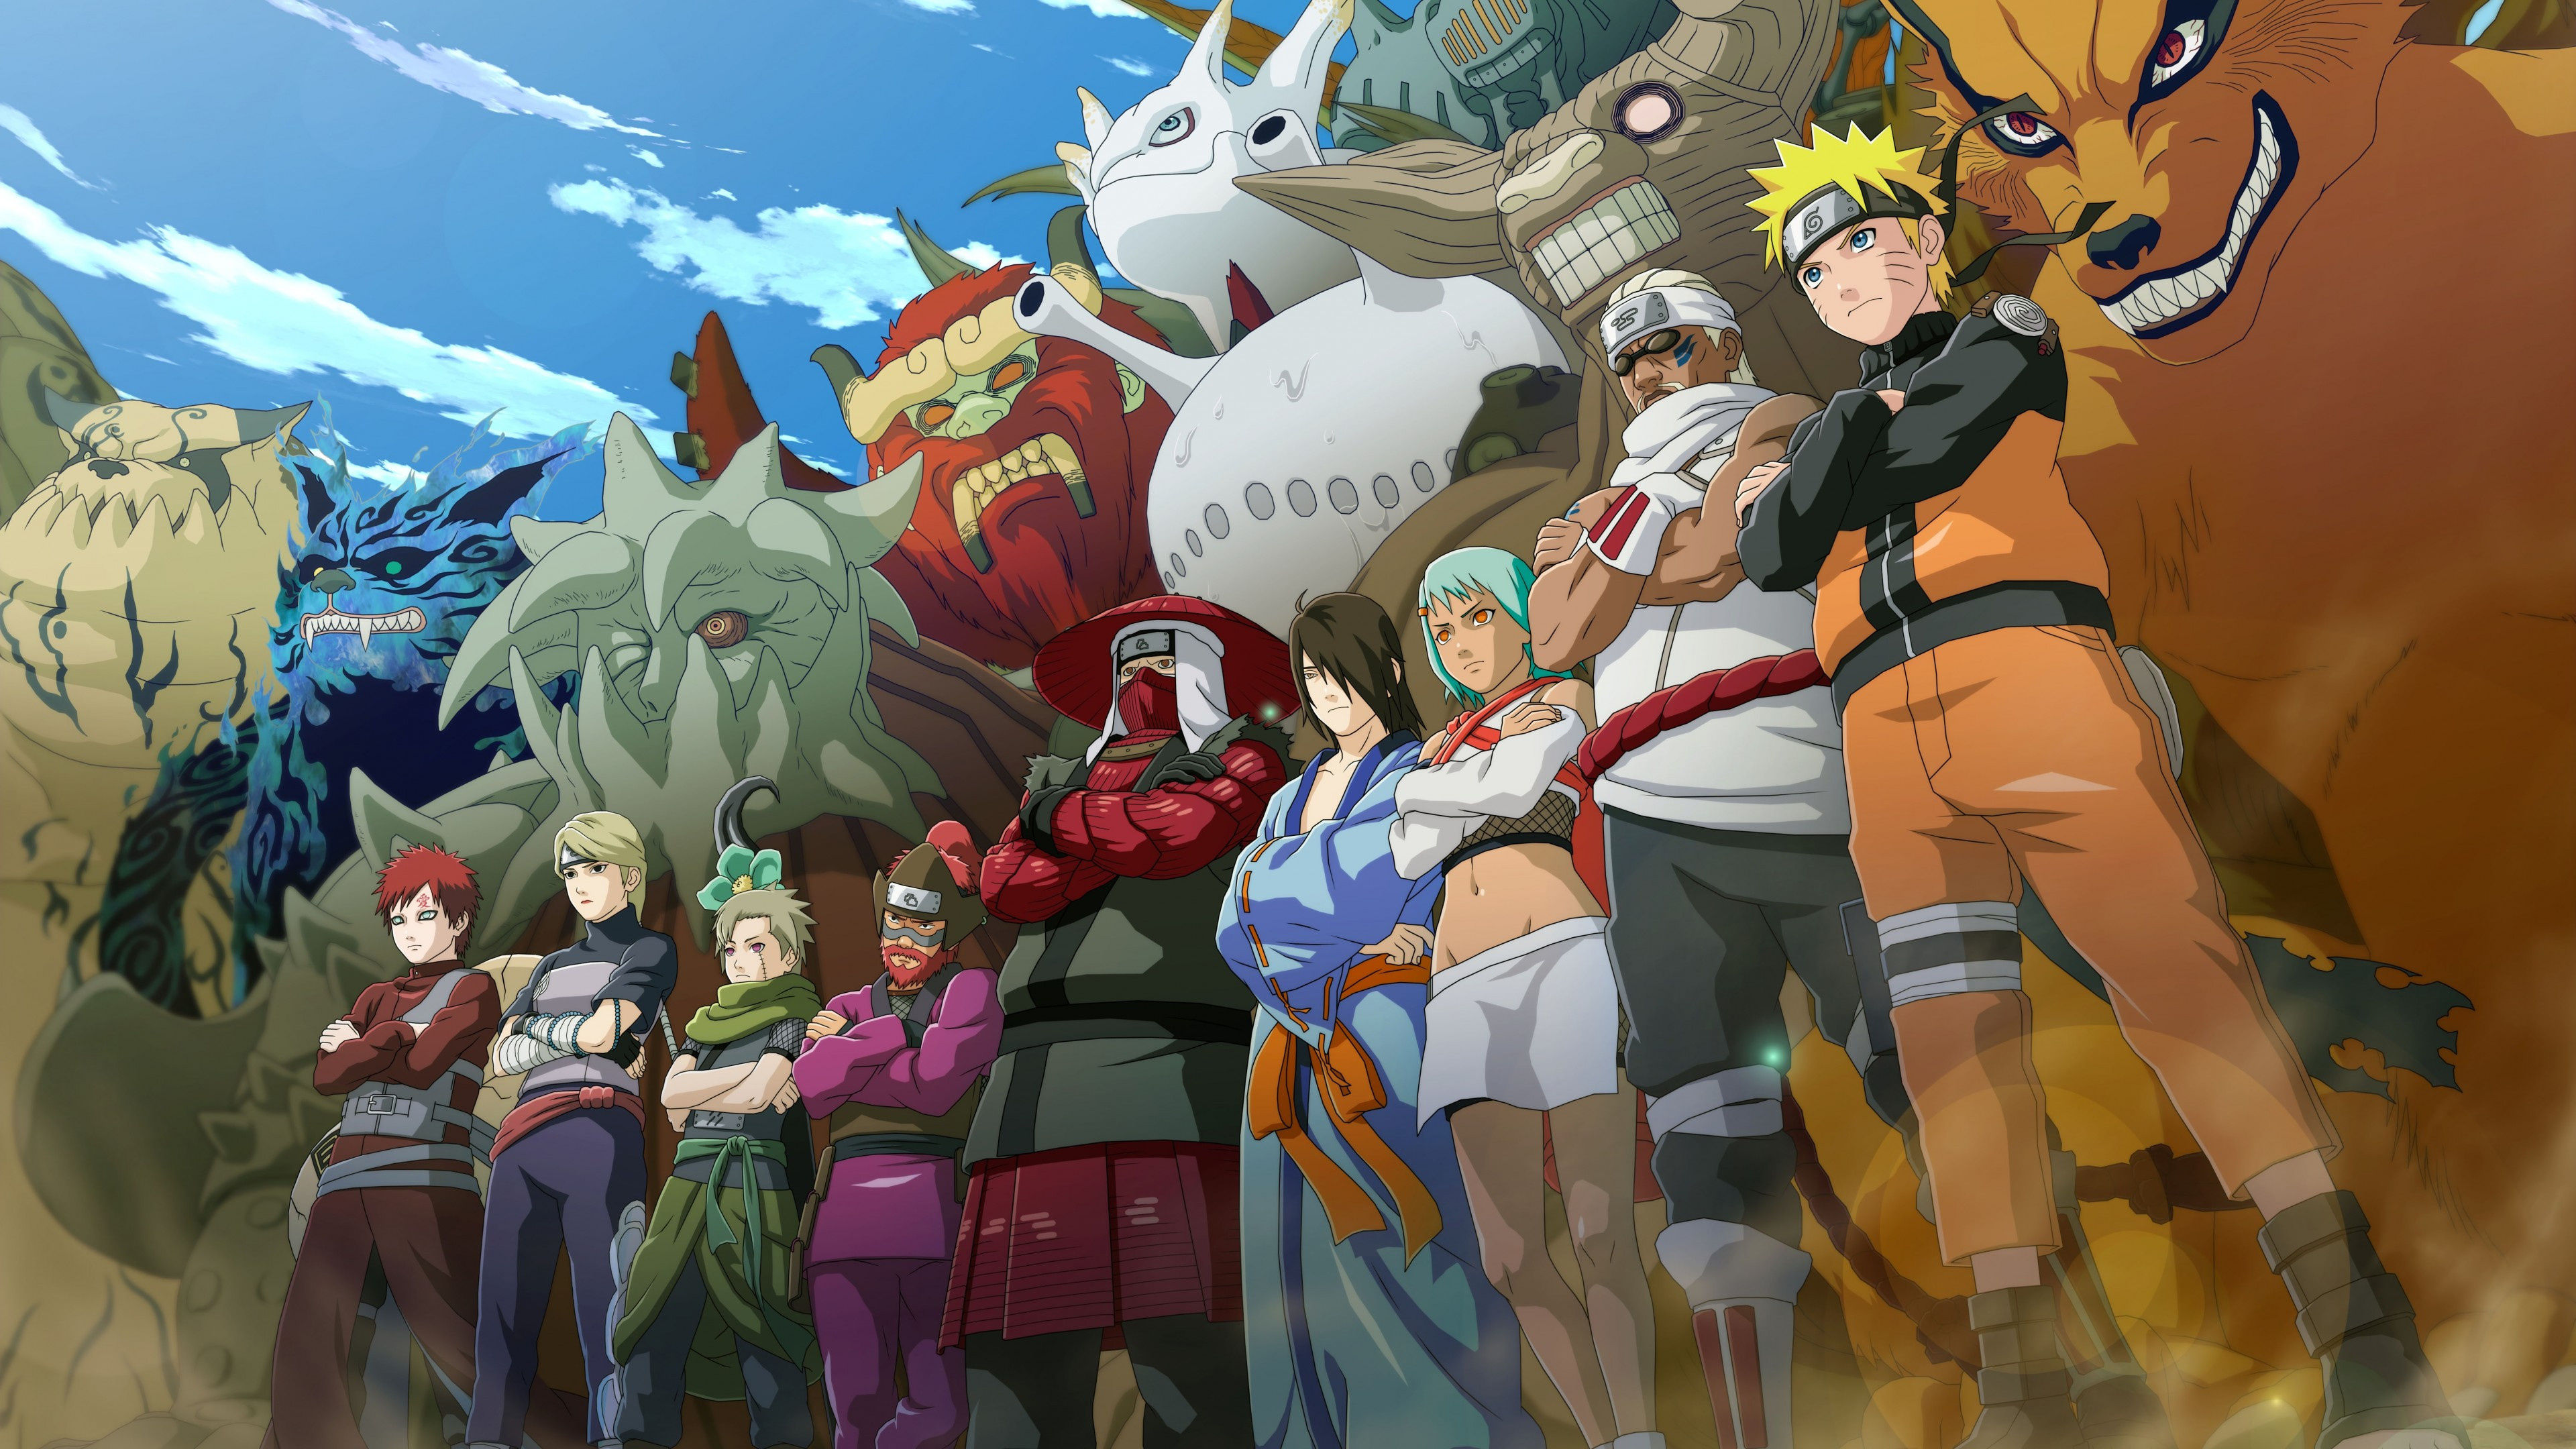 Kurama (Anime), Naruto and his allies, UHD TV wallpapers, Teamwork and power, 3840x2160 4K Desktop